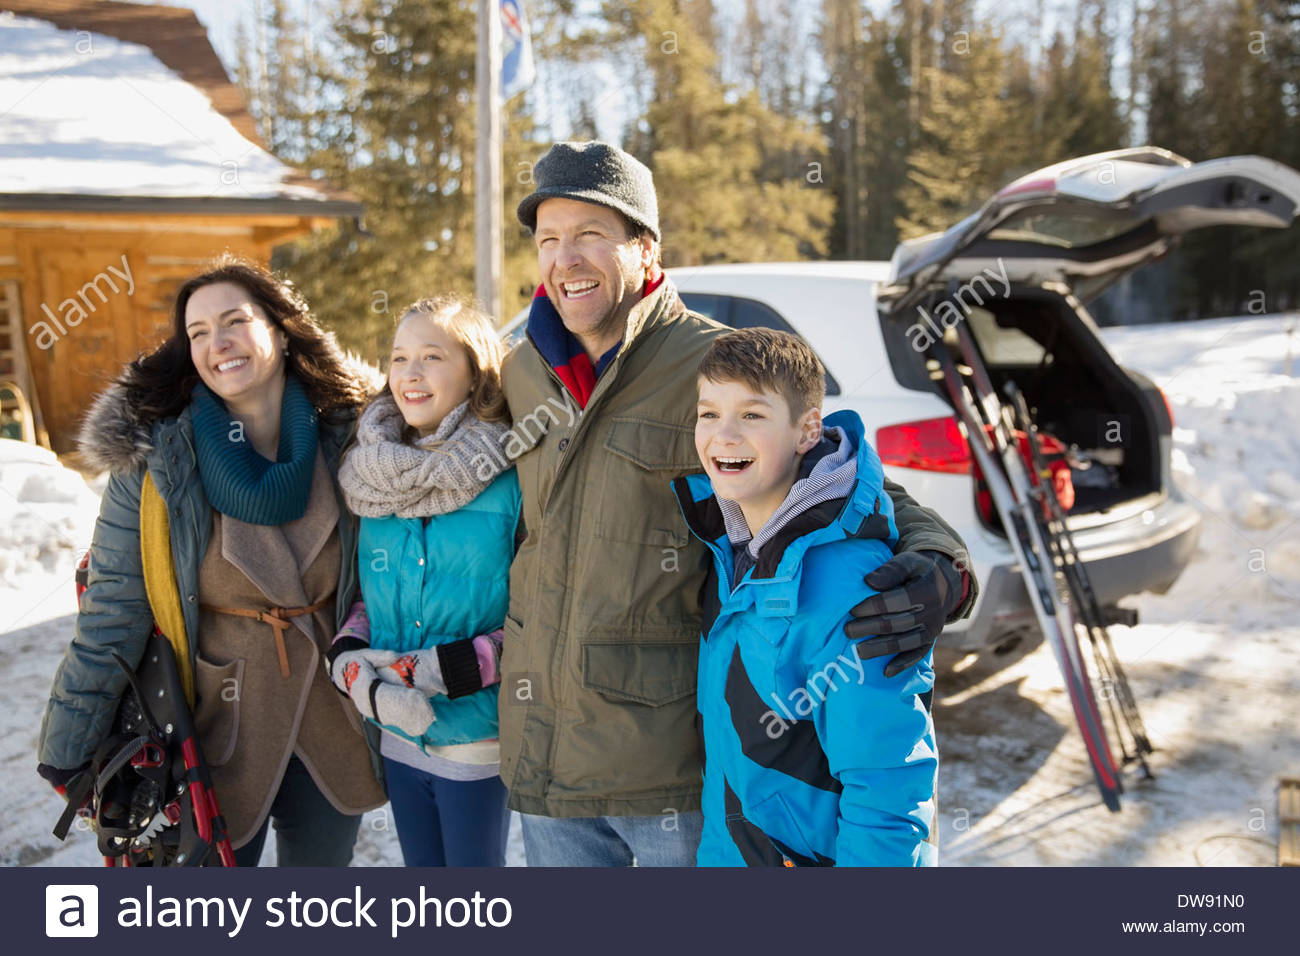 Happy family on ski holiday Stock Photo